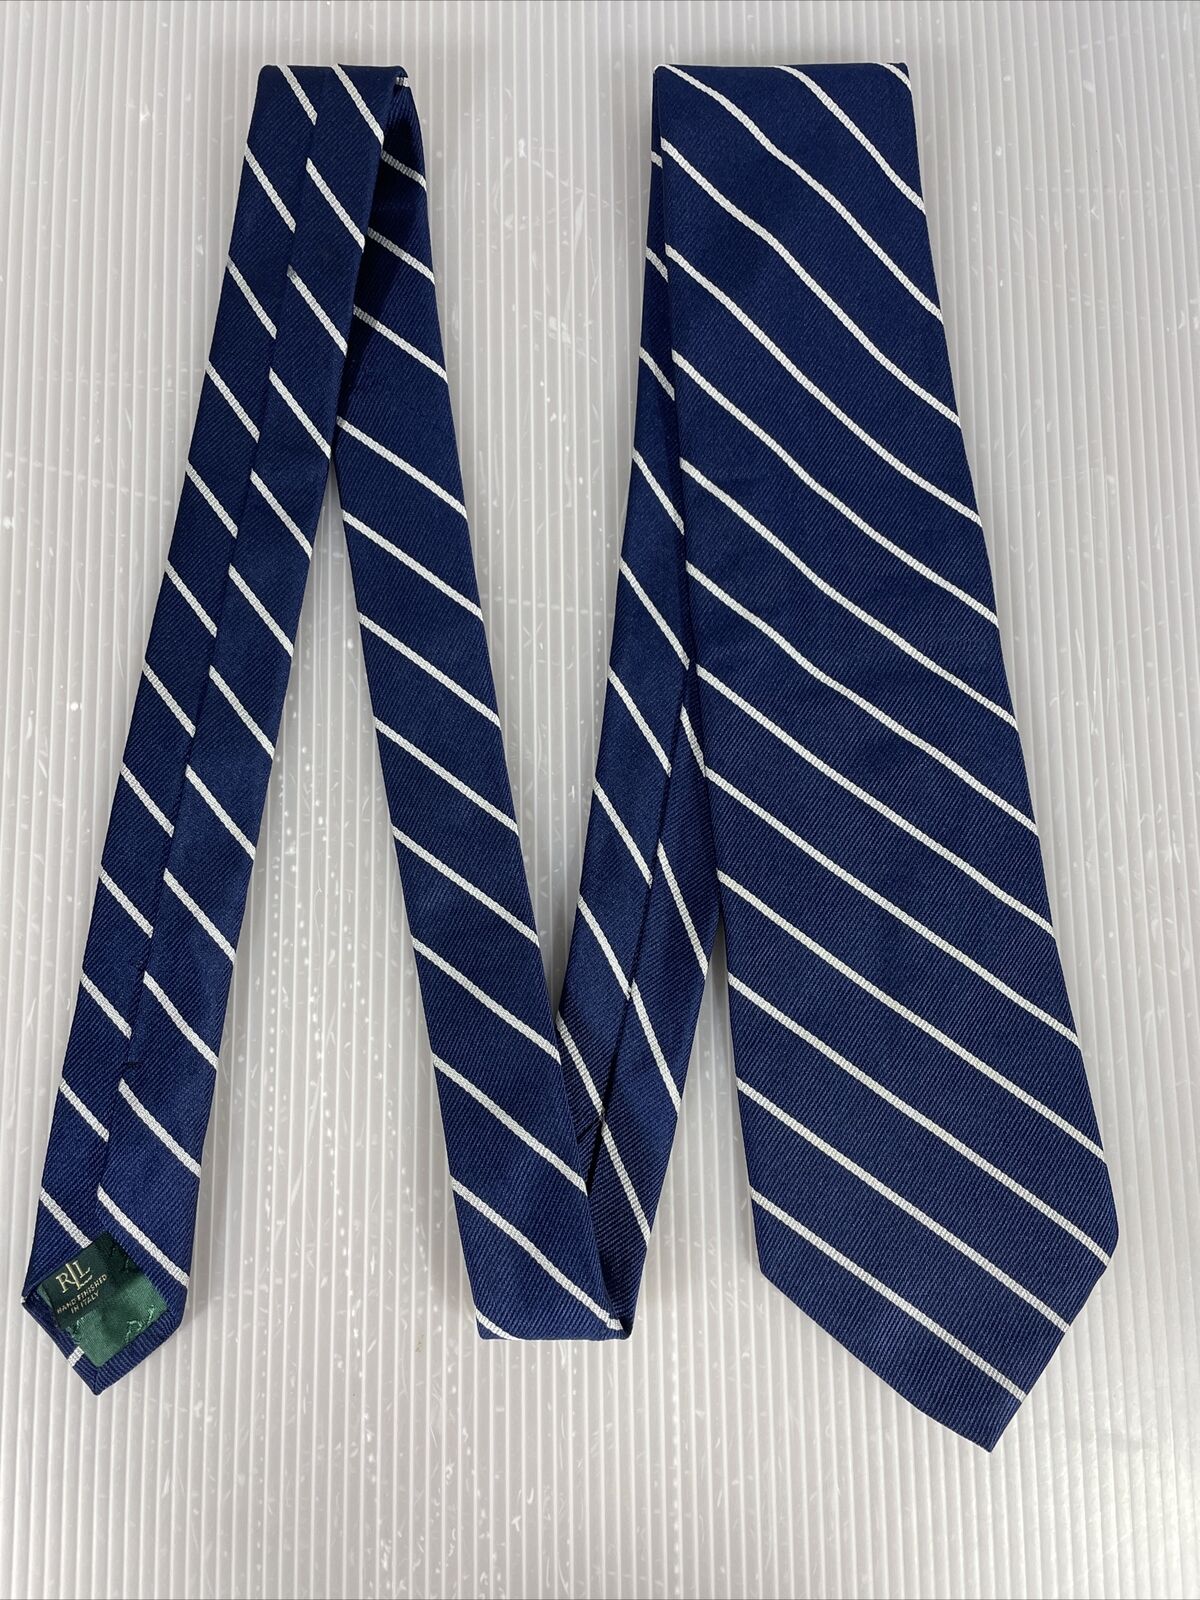 Lauren Ralph Lauren Neck Tie Blue/ White Stripes 100% Silk